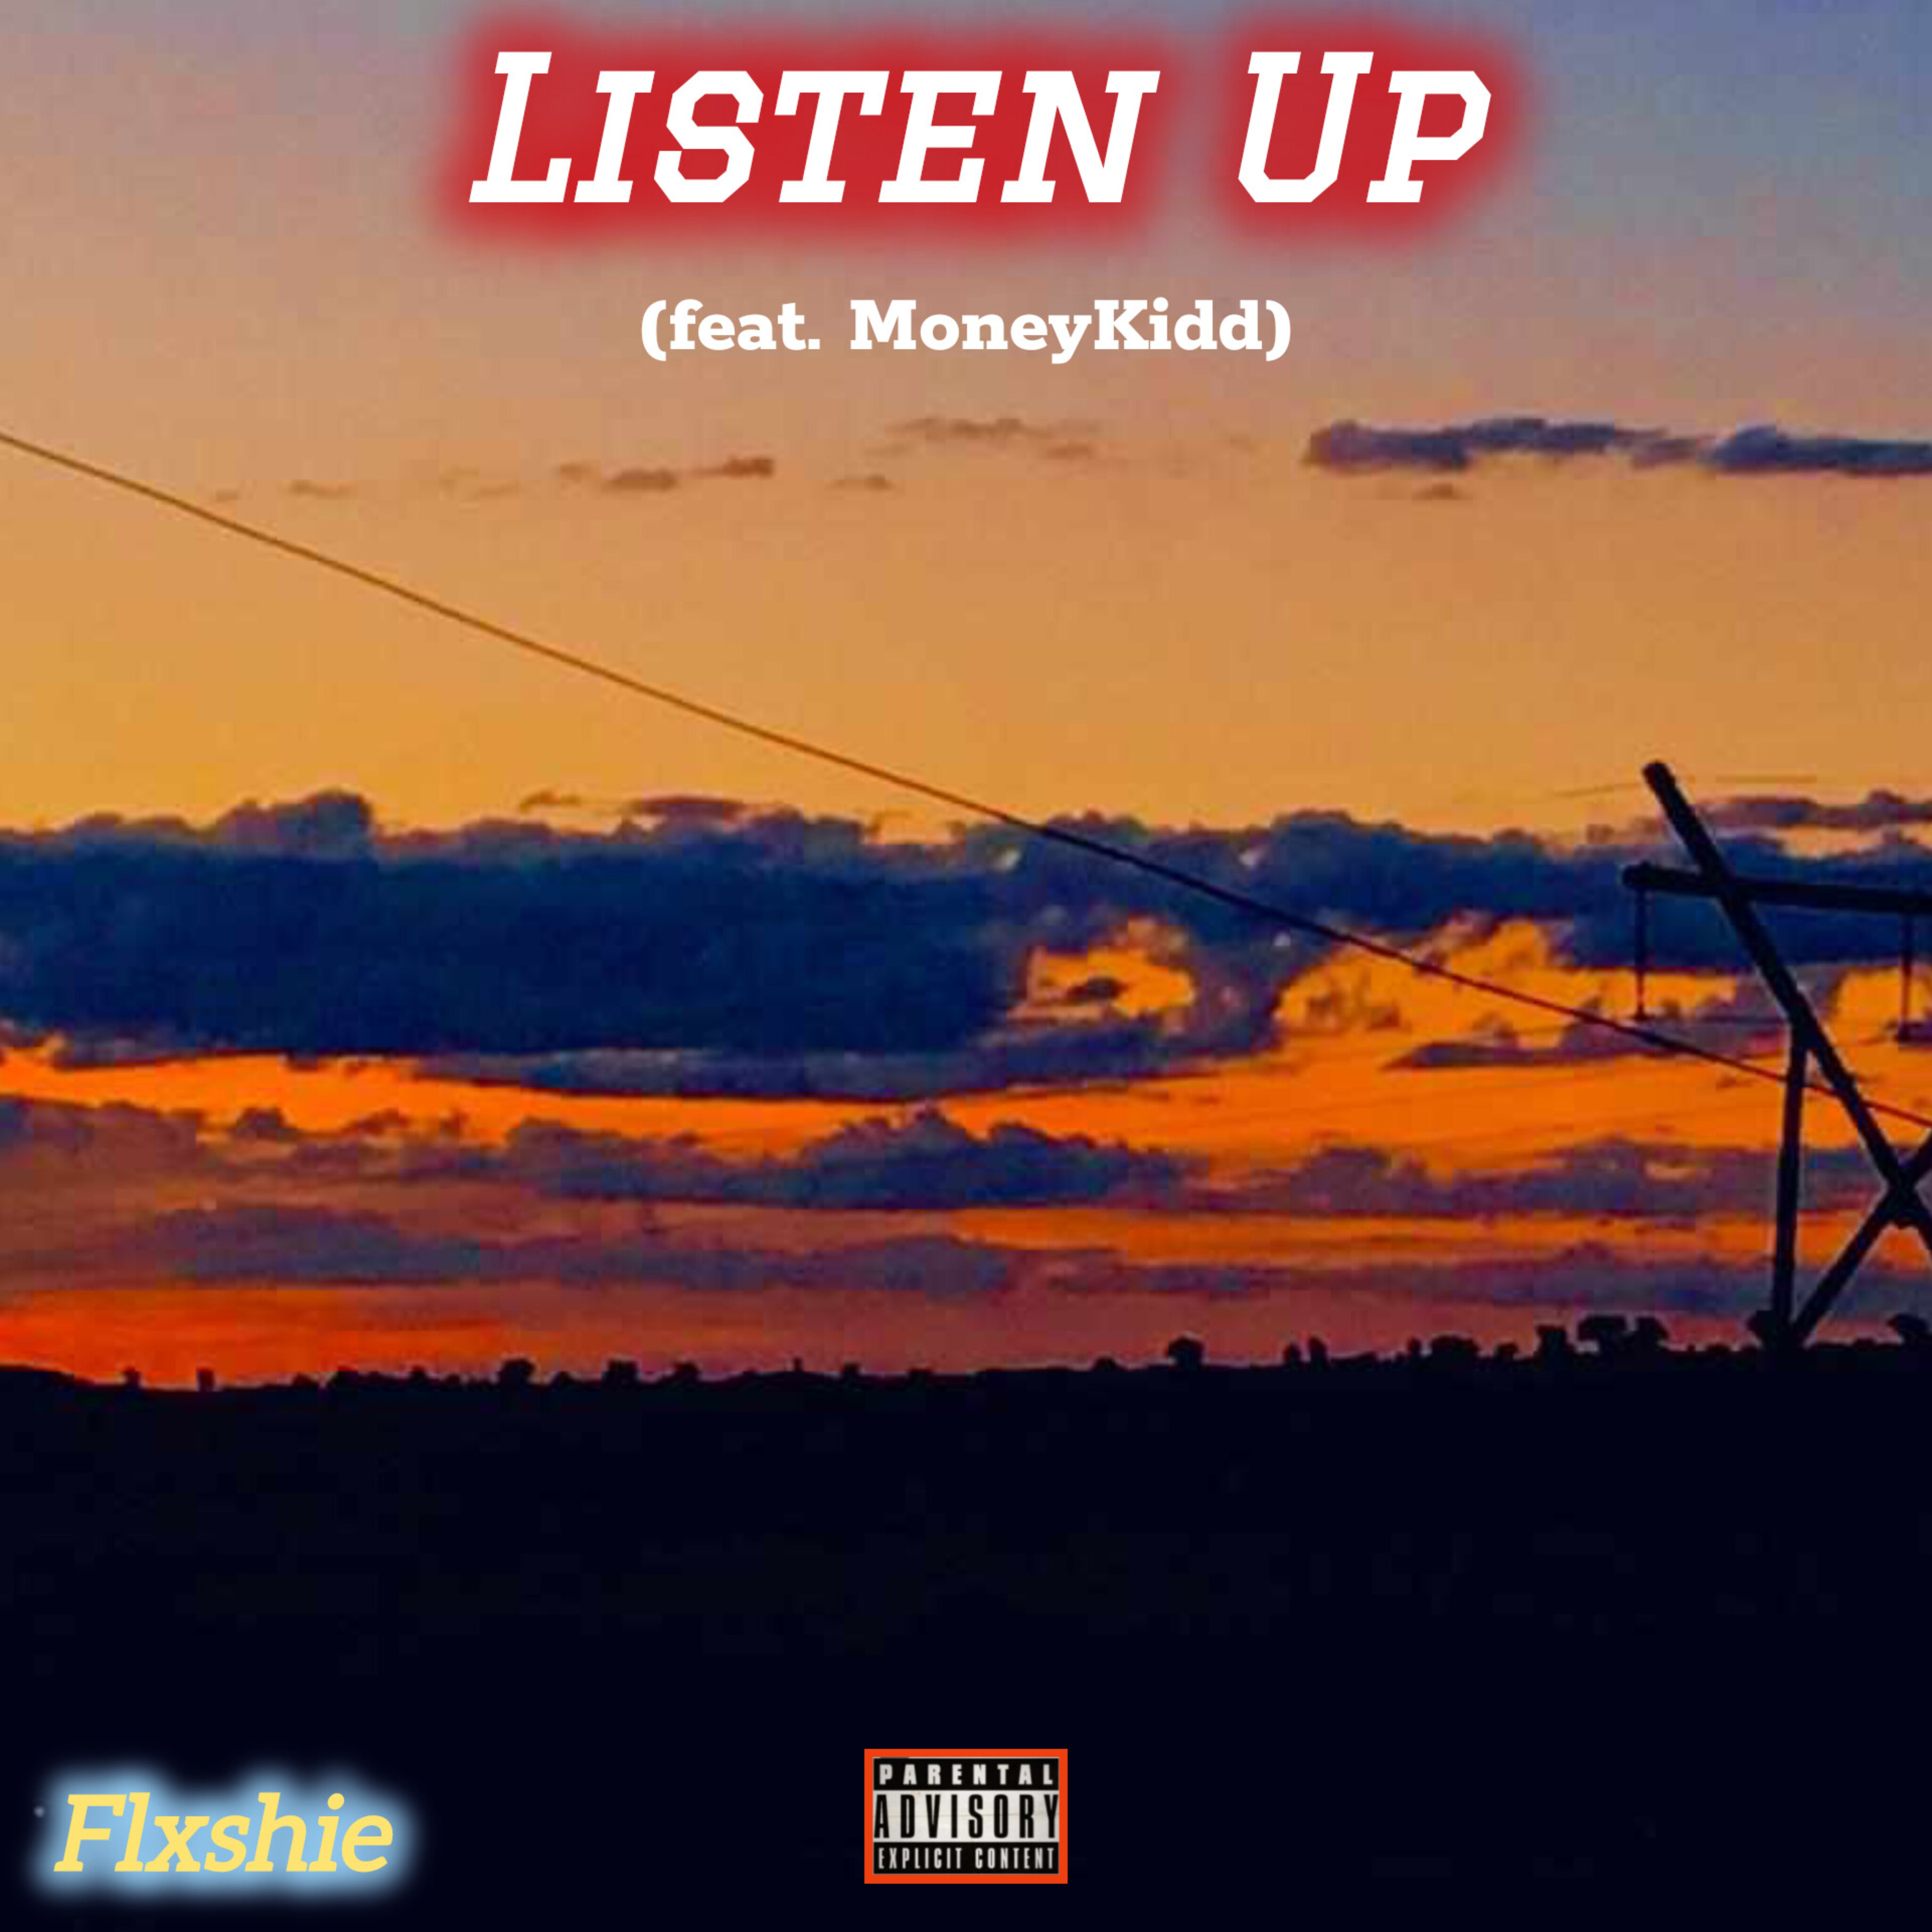 Listen Up (feat. MoneyKidd) - Flxshie